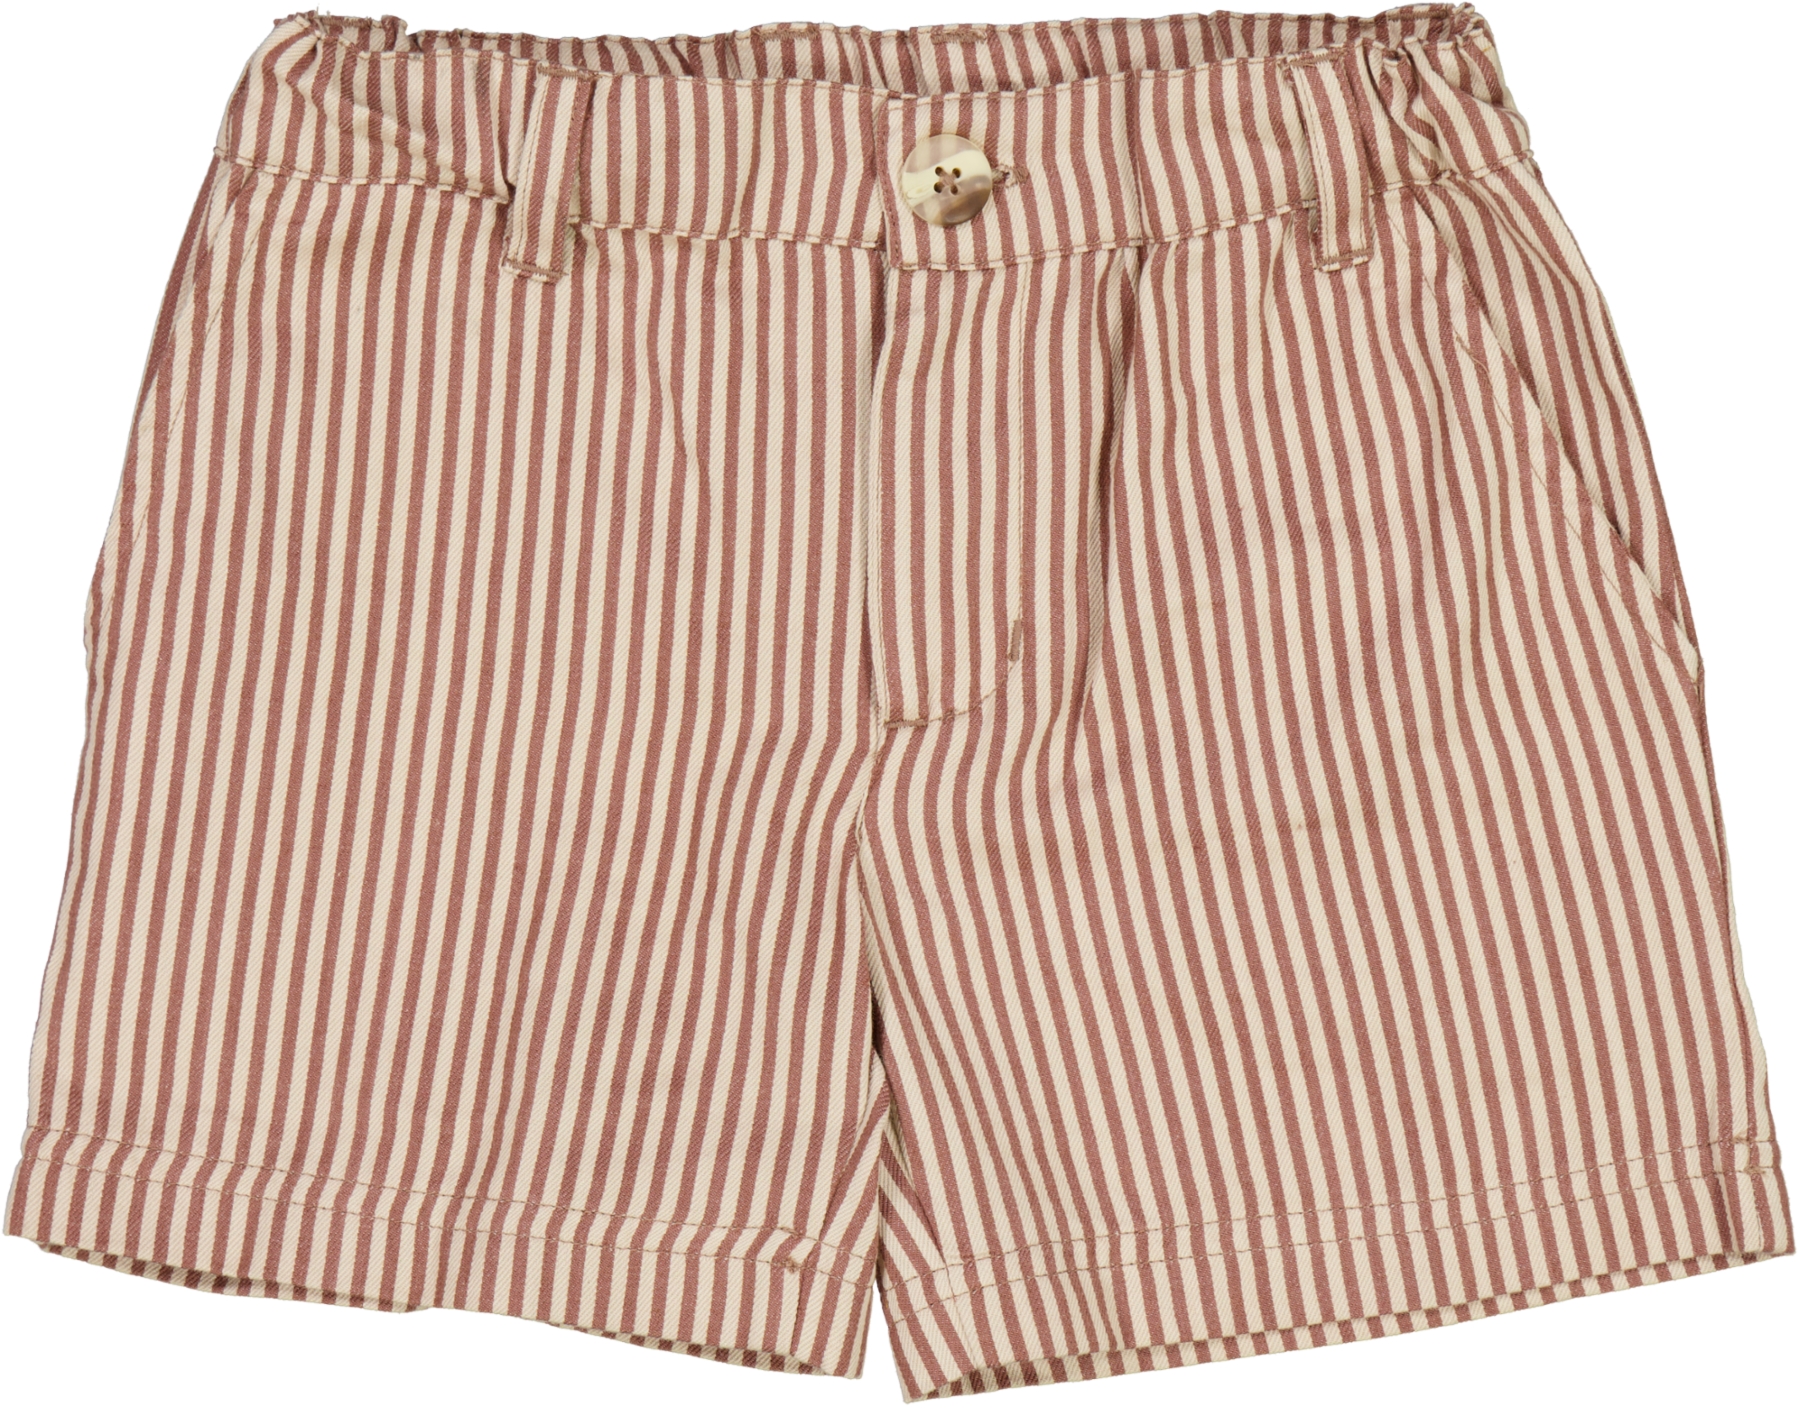 Jeffogjoy-wheat-shorts-2951h-409-2476-vintage-stripe